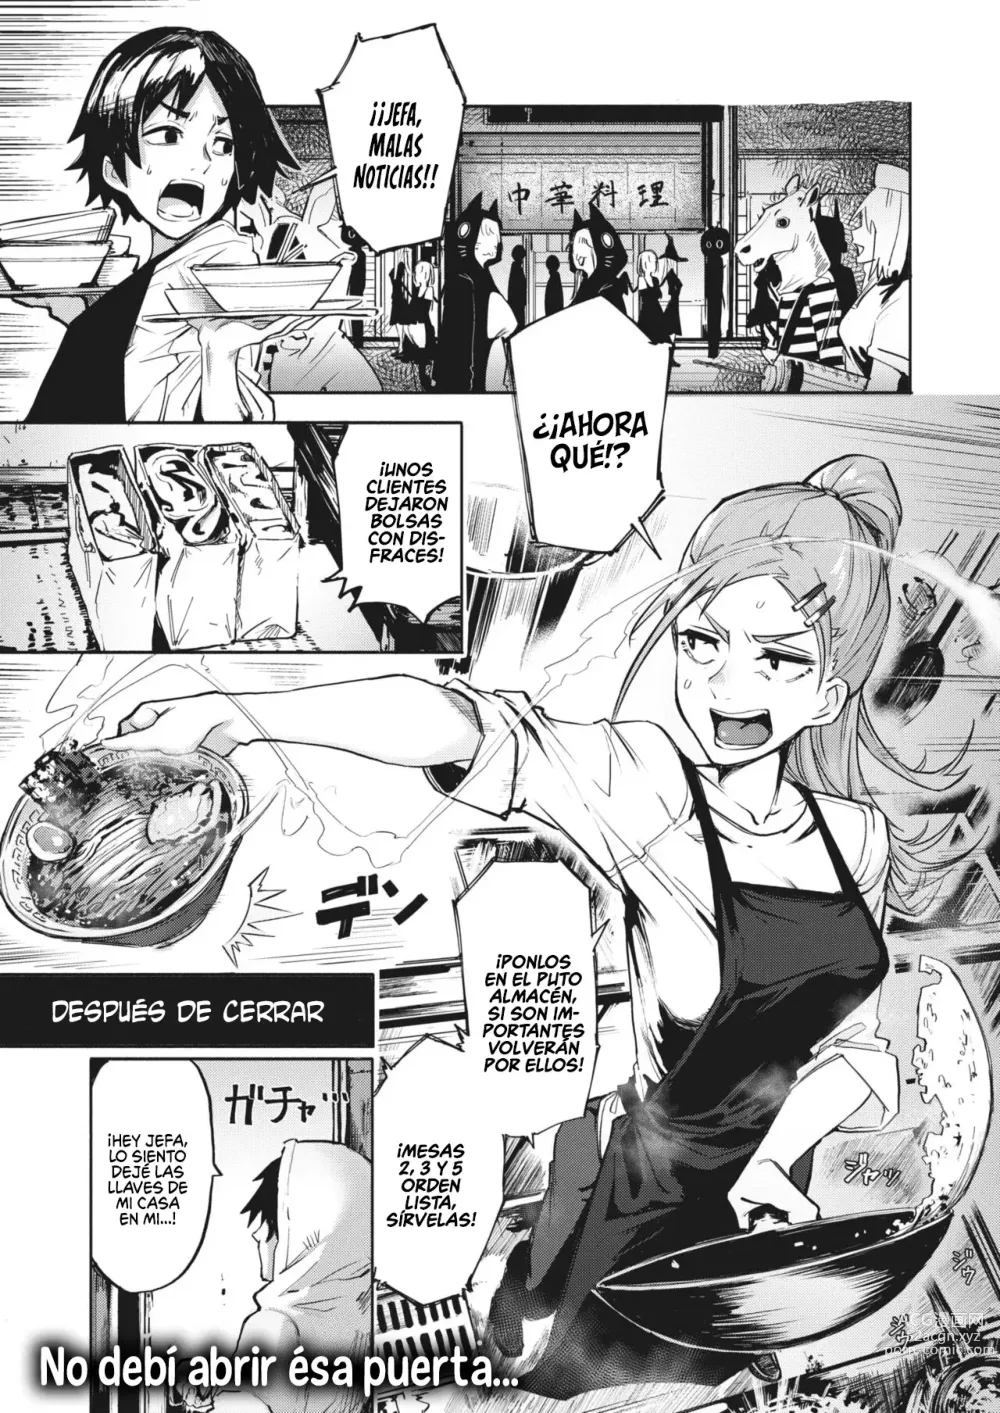 Page 1 of manga Estas exagerando abuela!